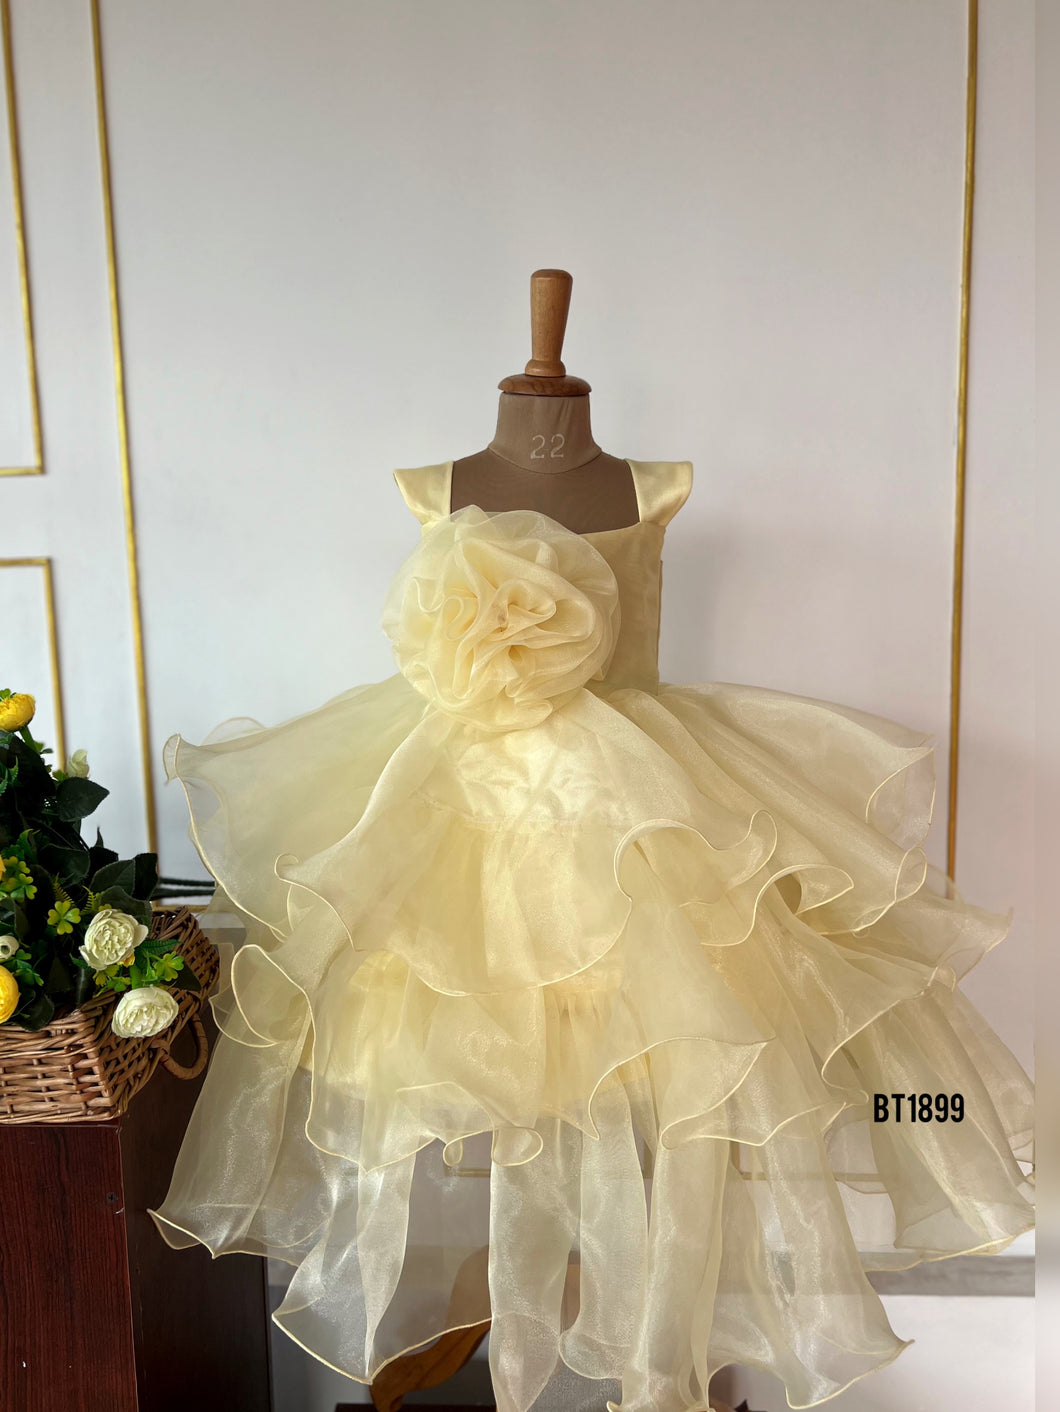 BT1899 Golden Glow Fairy Dress